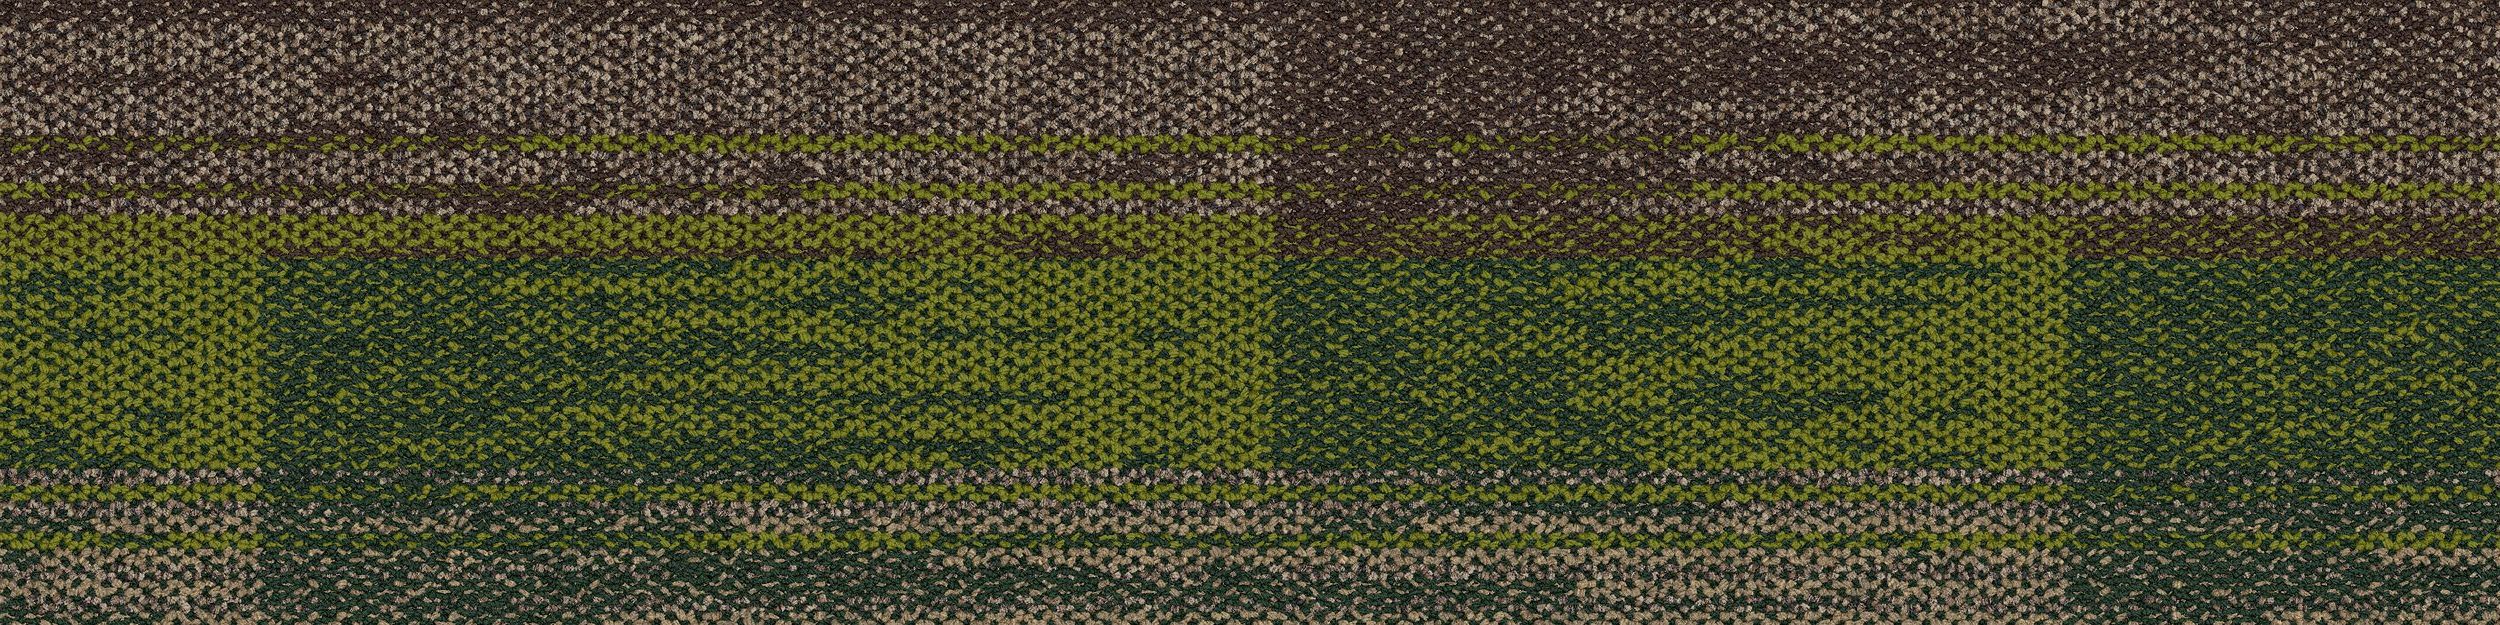 AE315 Carpet Tile In Mushroom/Grass imagen número 2